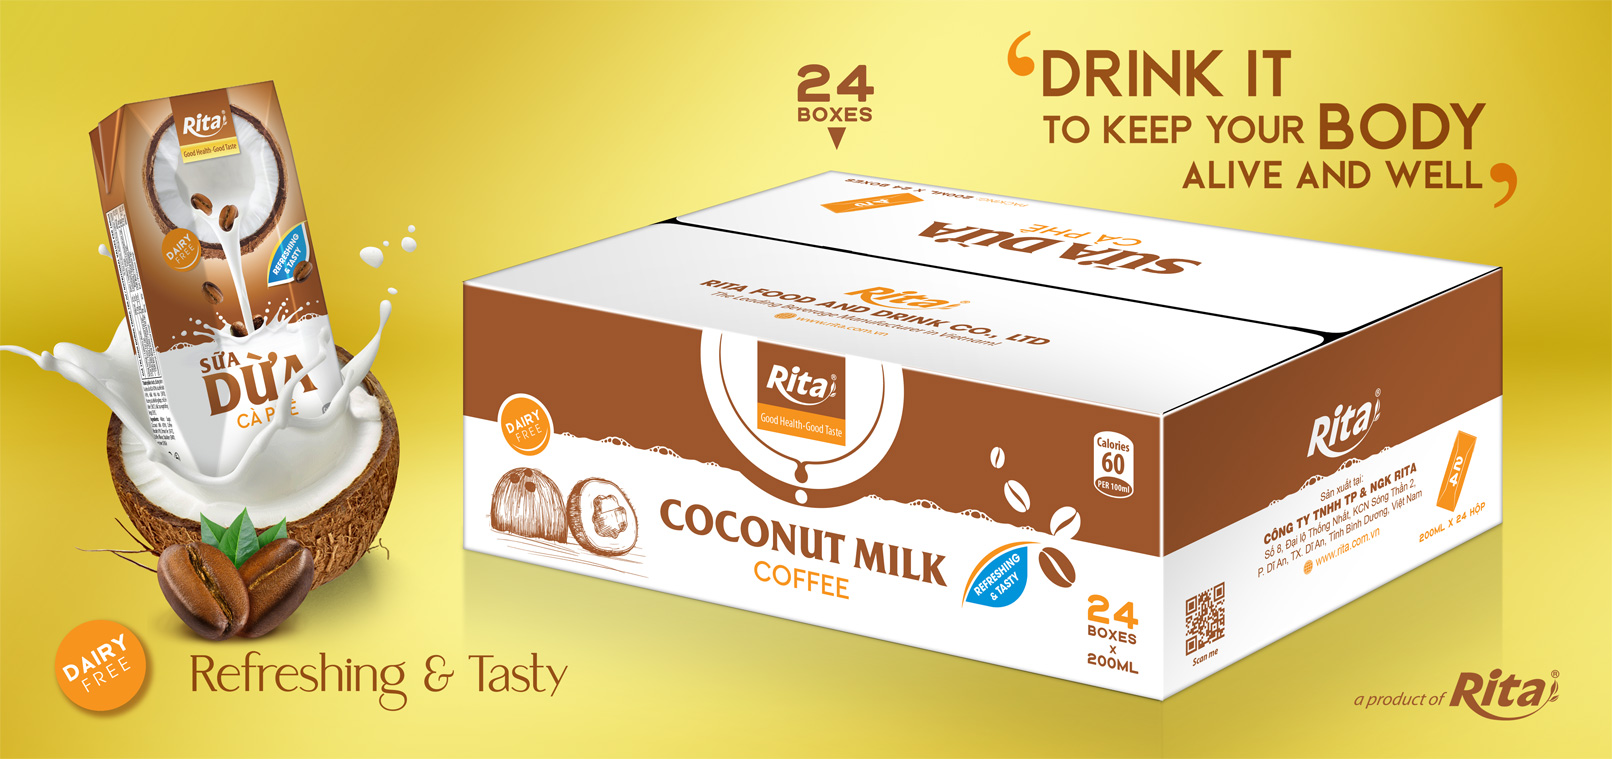 3D Carton Coco Milk Cafe 200ml x 24 boxes